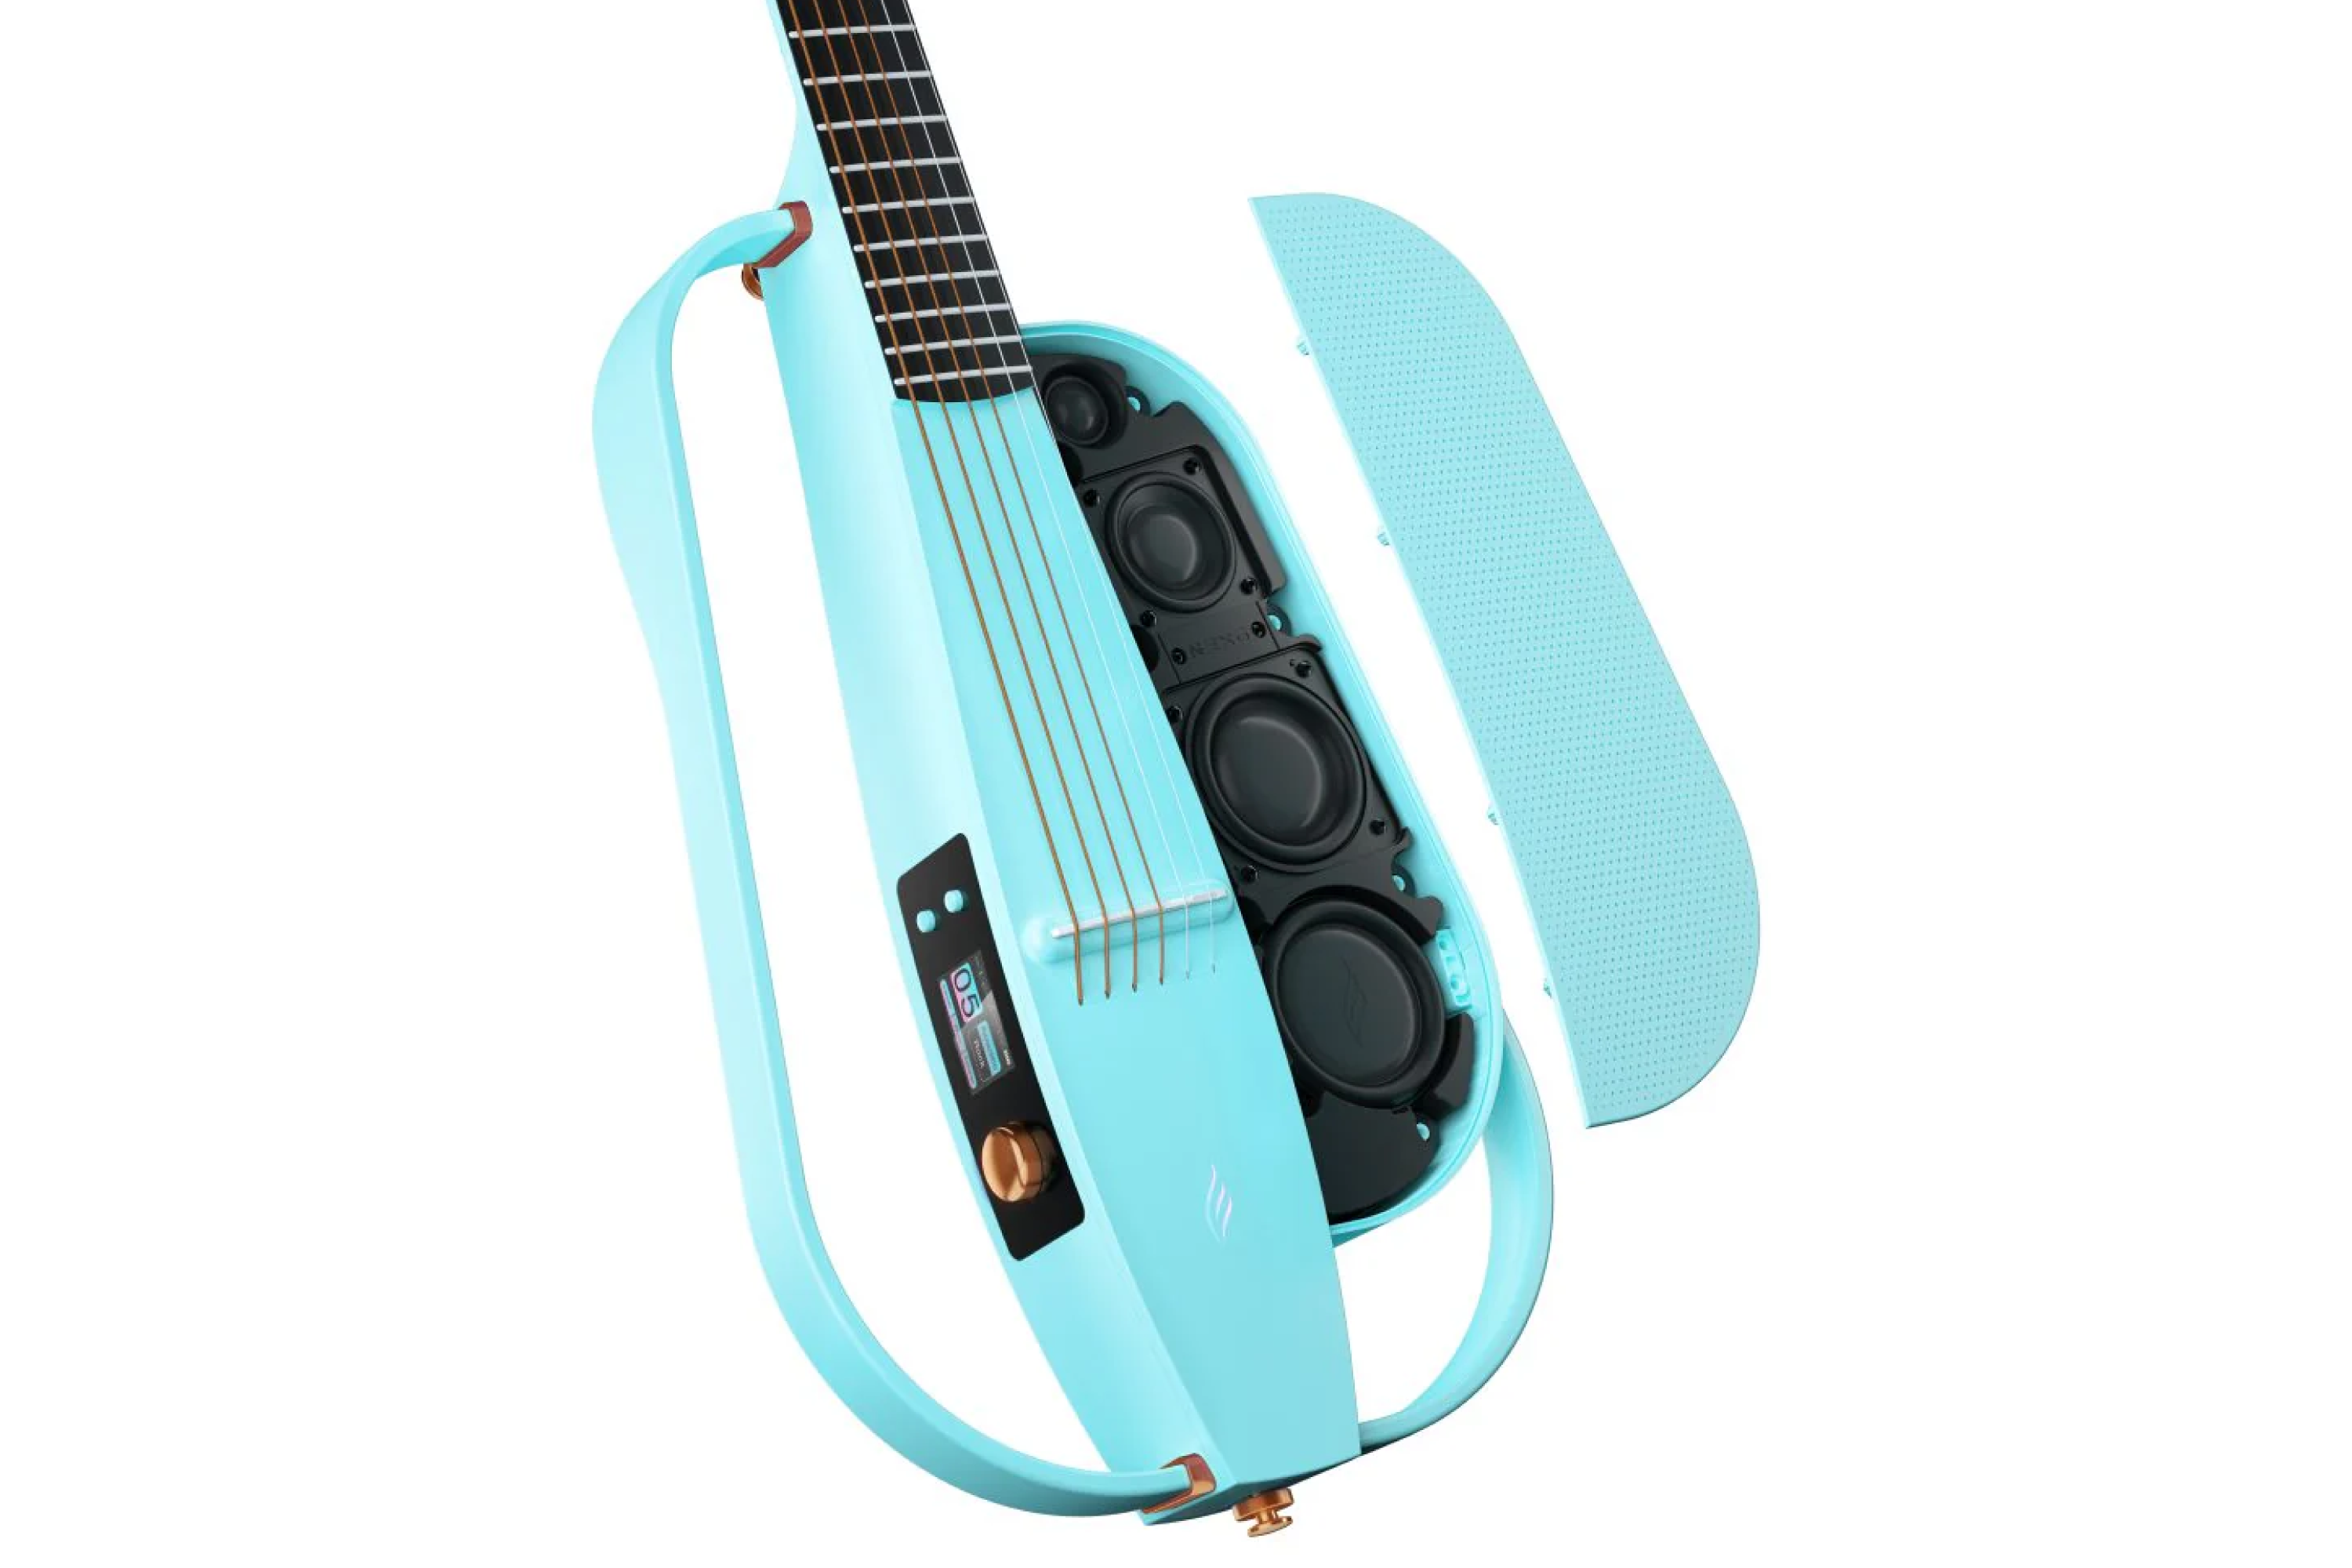 Enya NEXG 2 All-in-One Smart Audio Loop Guitar - Blue